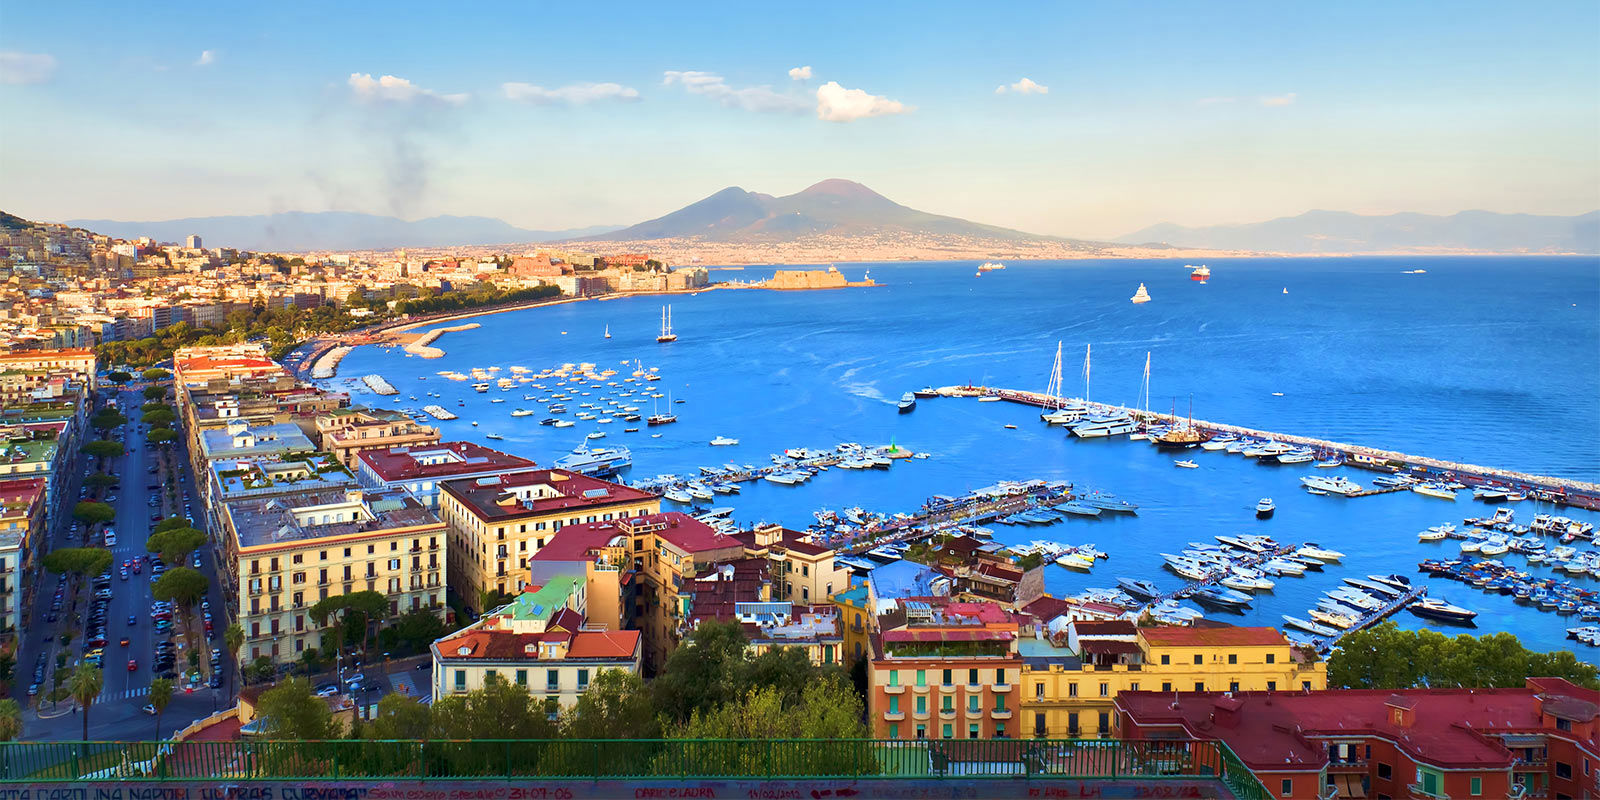 LHP Suite Napoli - Case Vacanze a Napoli in Zona Chiaia e Mergellina 4